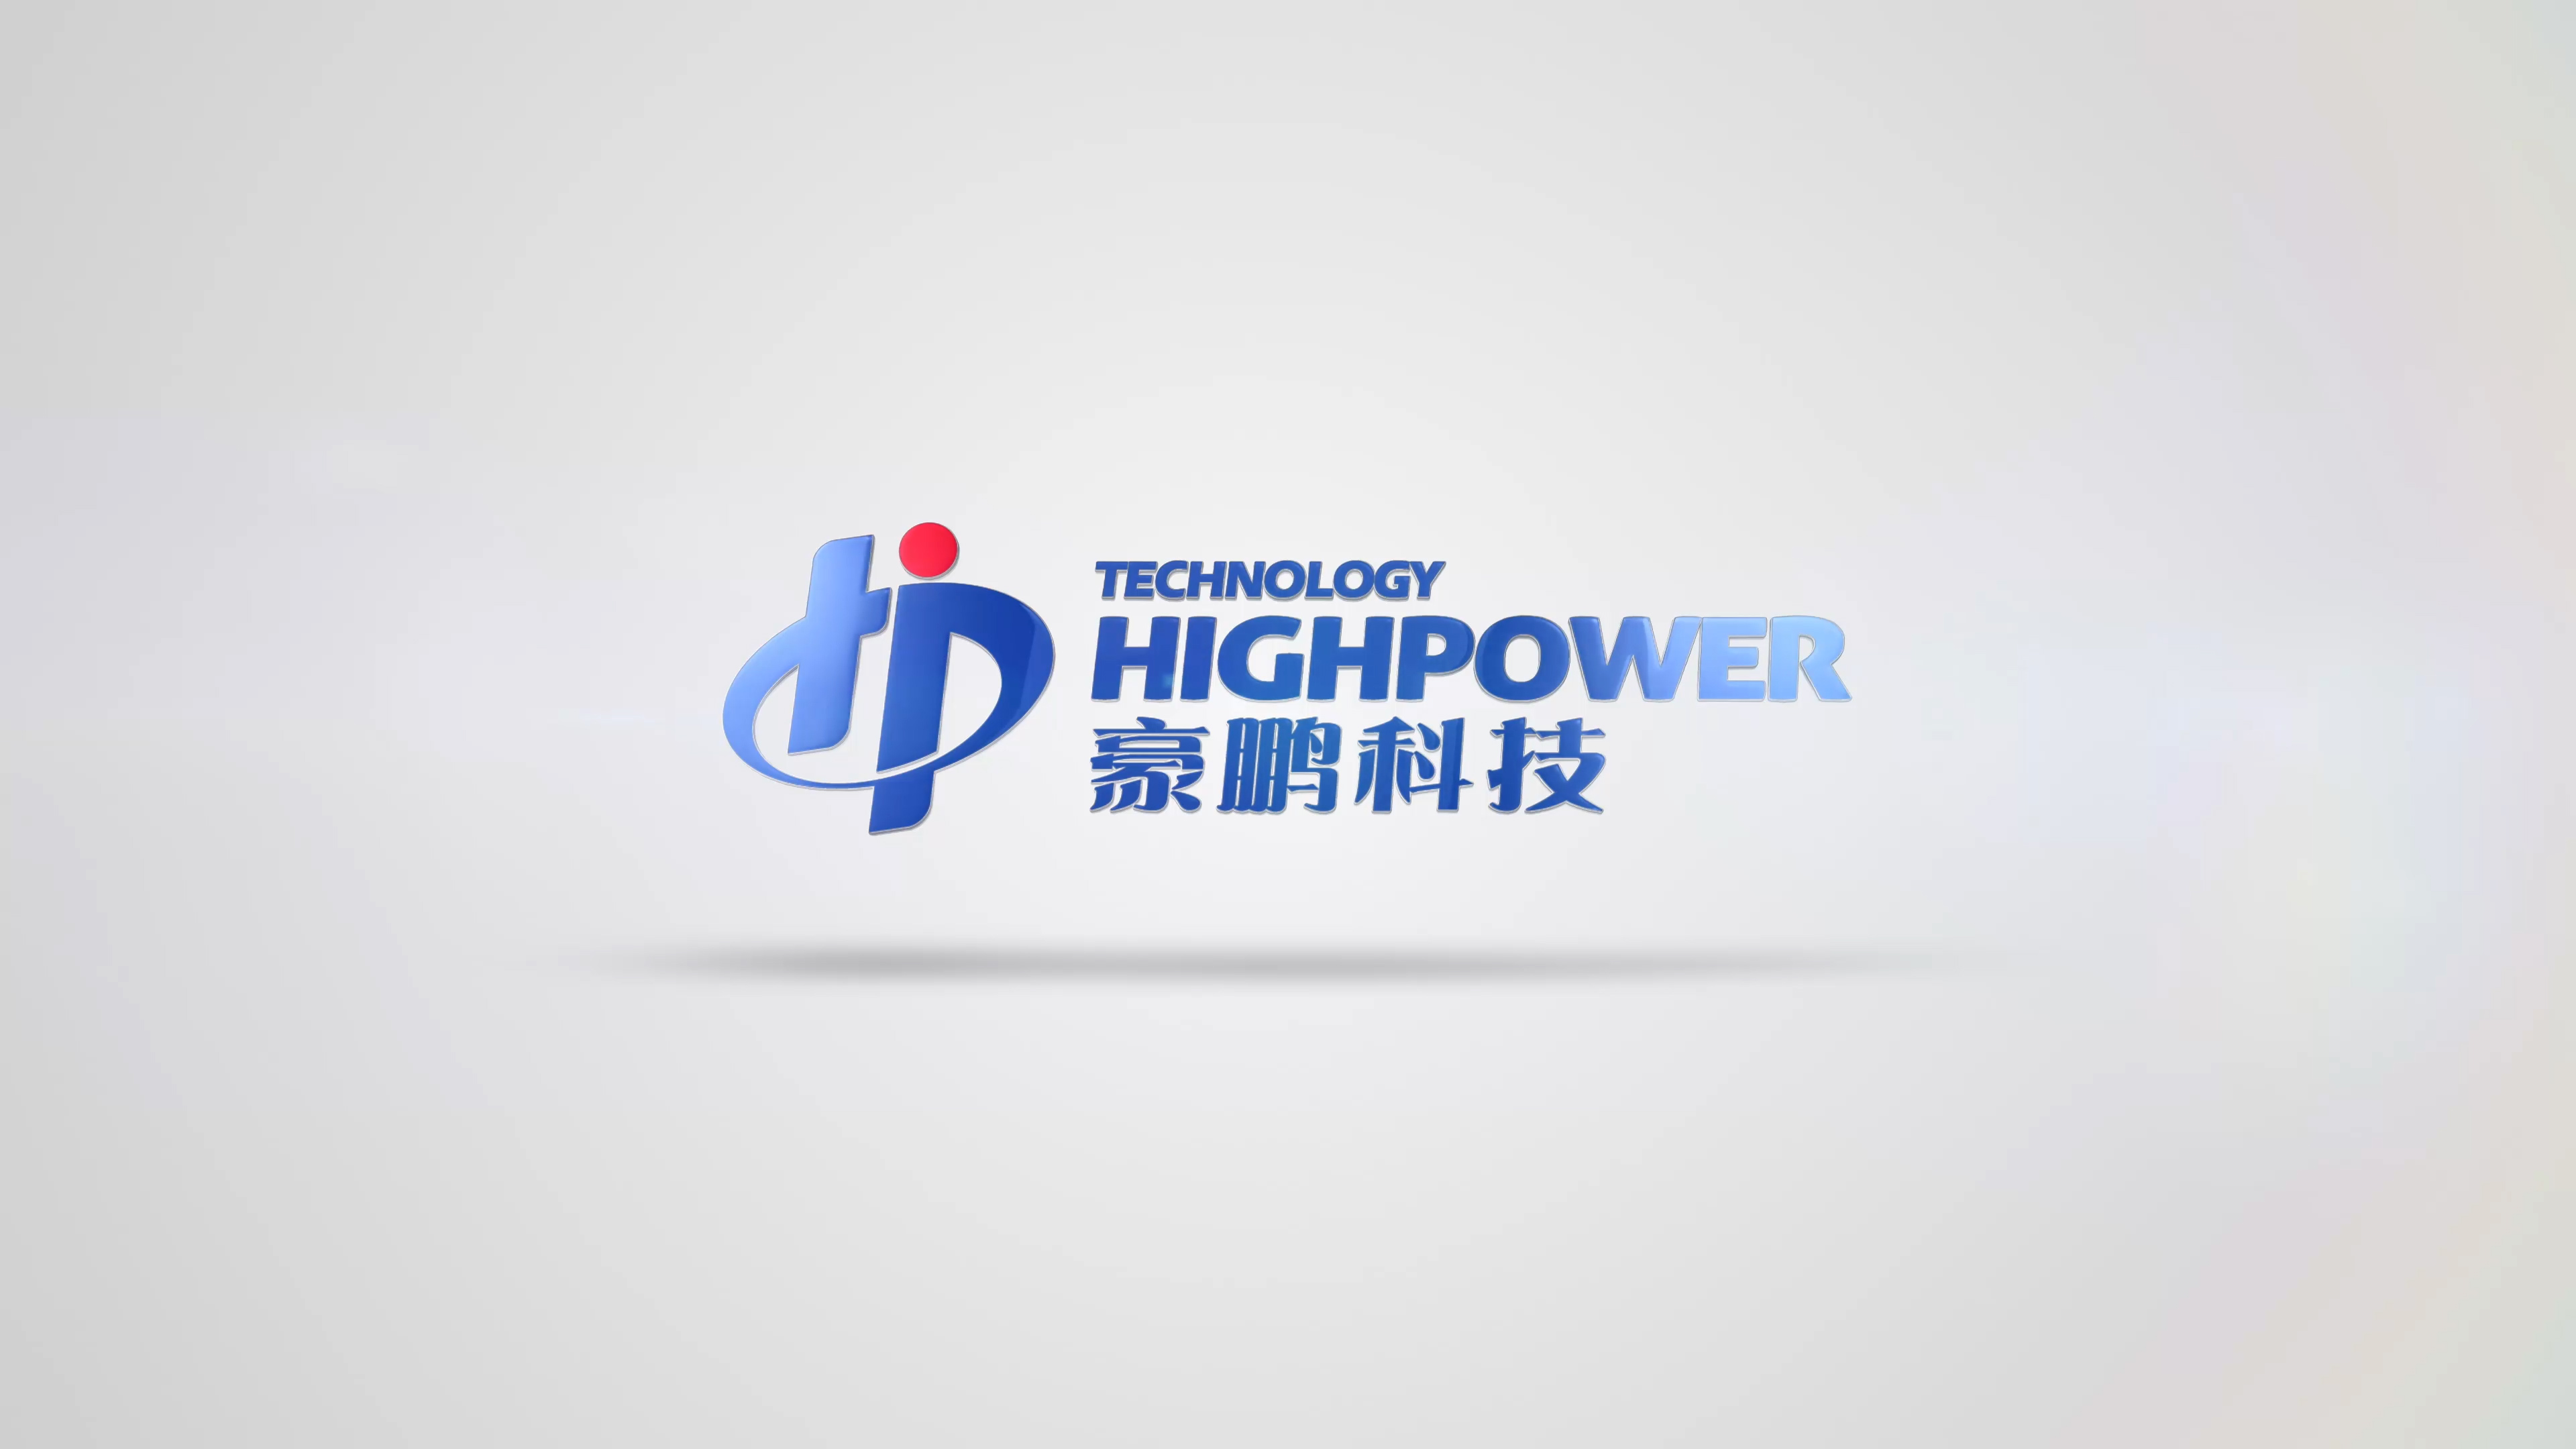 Highpower Technology